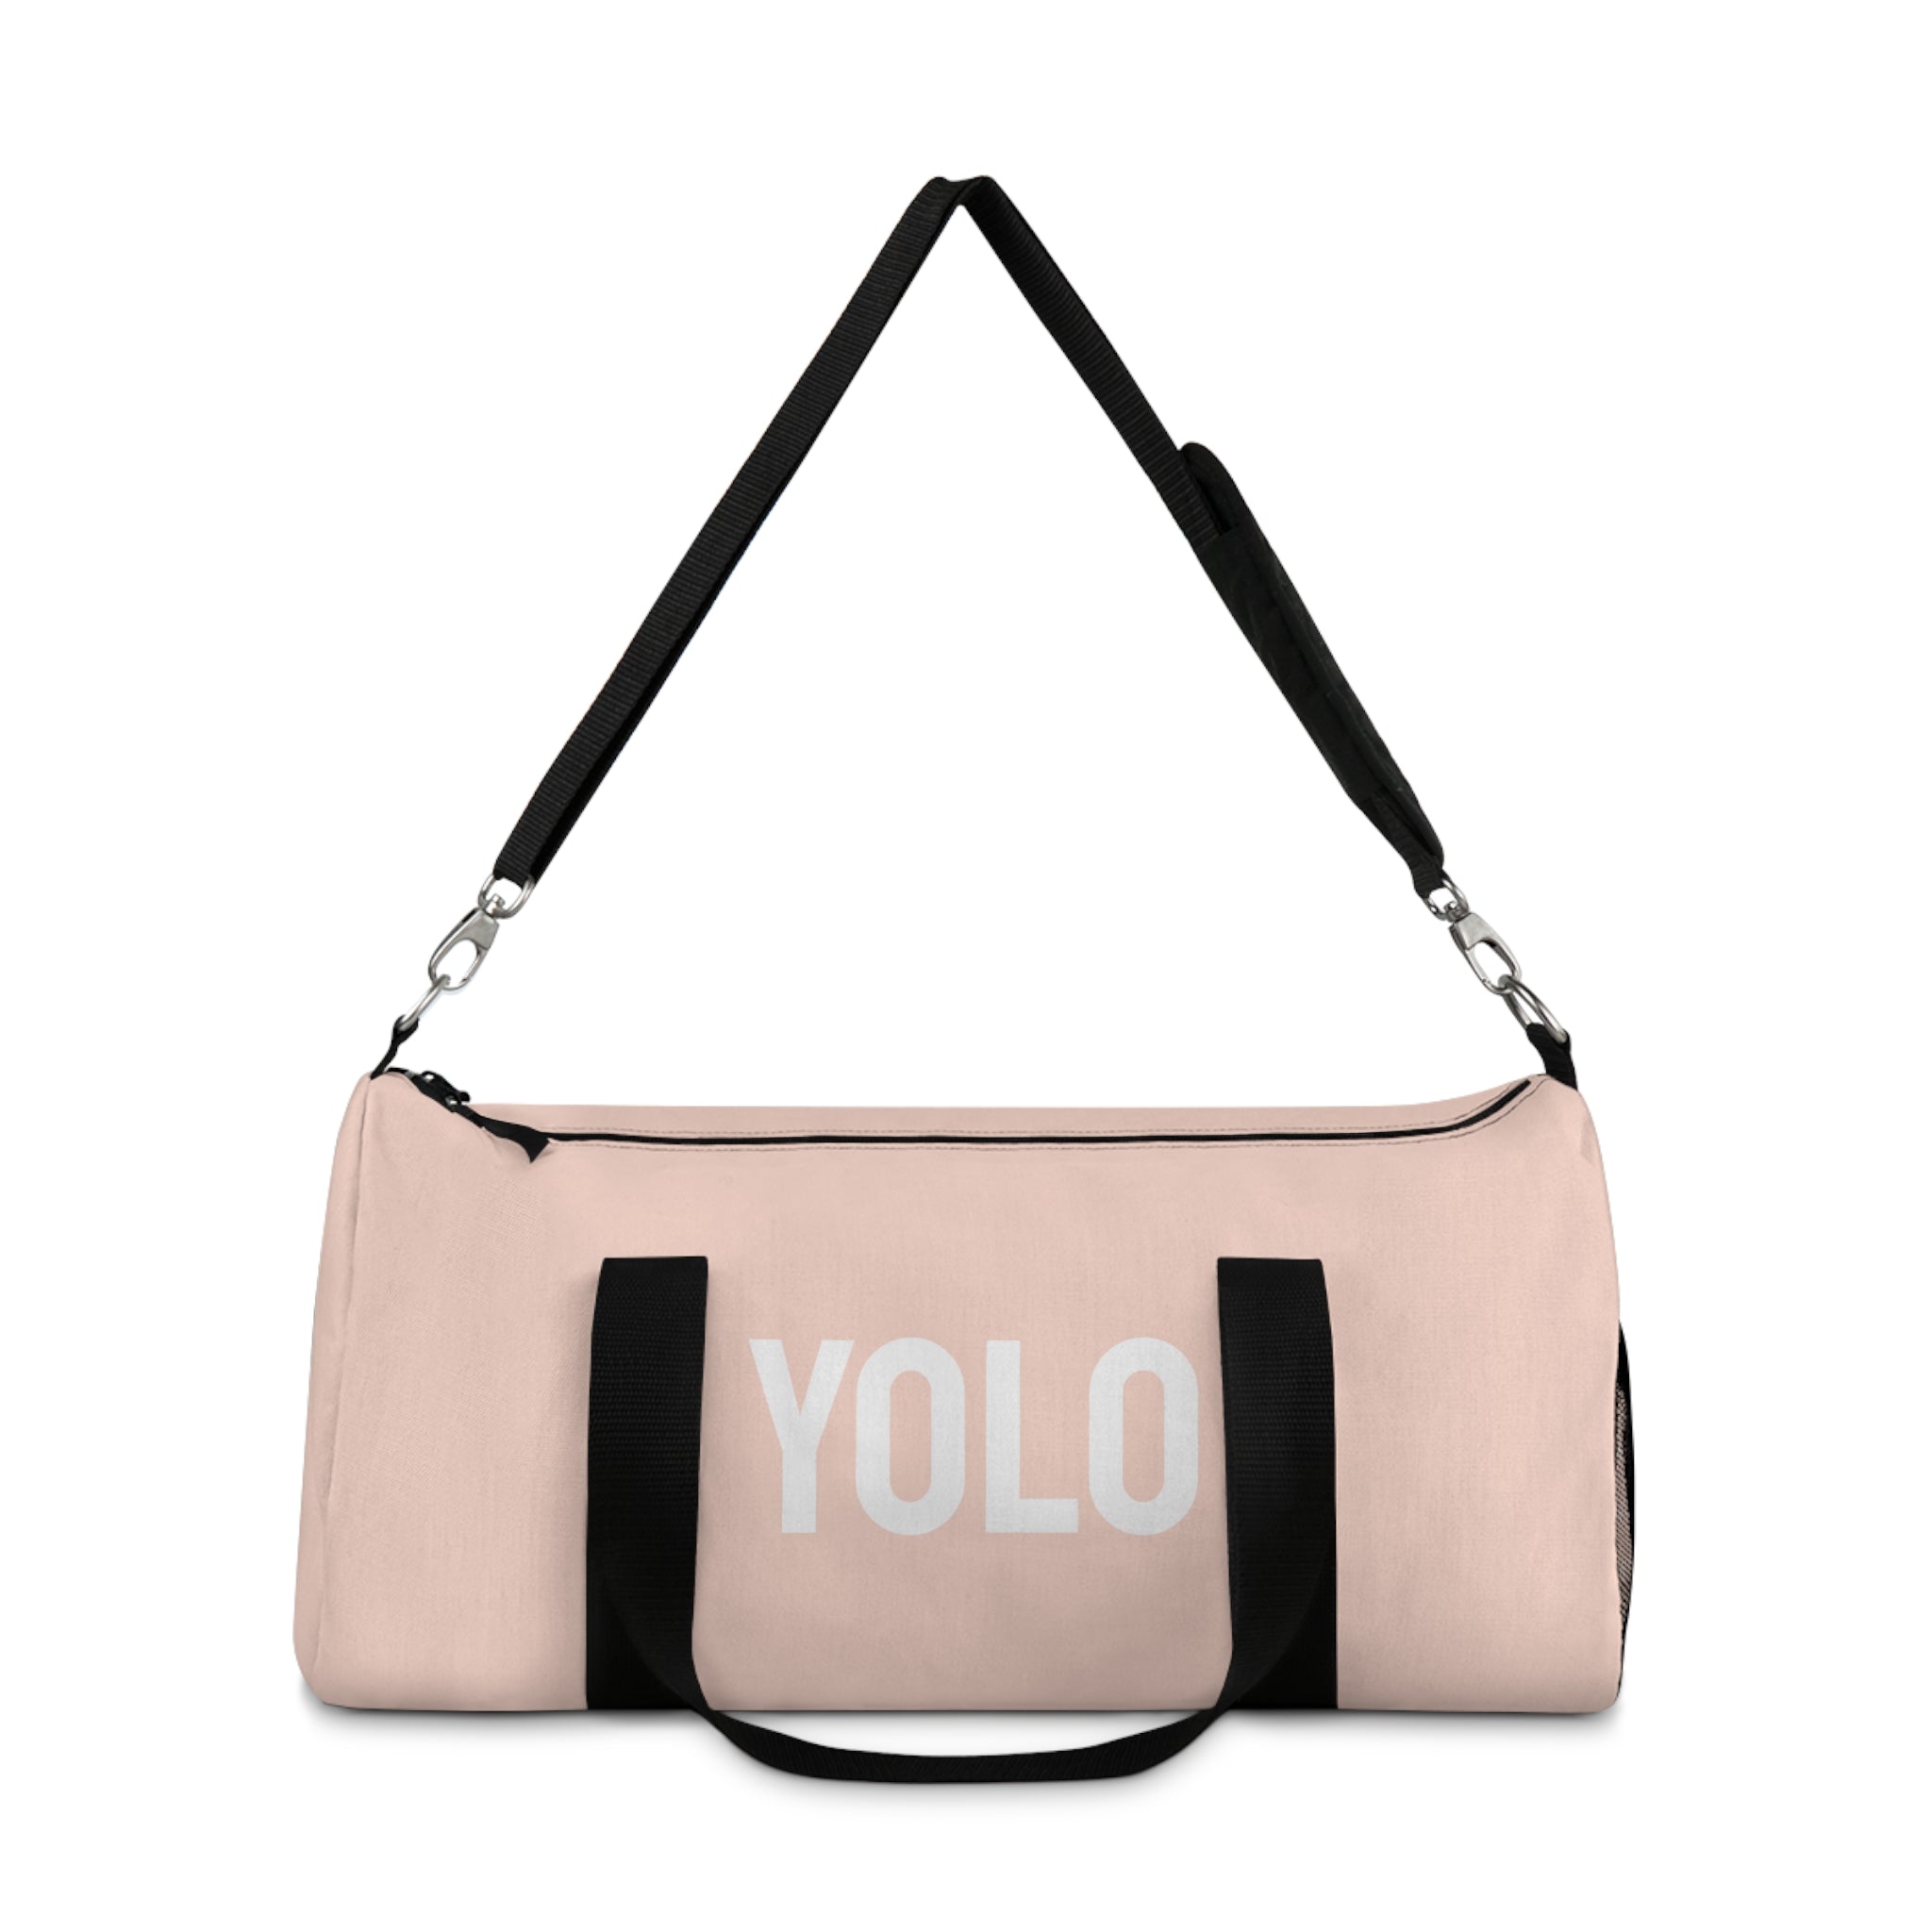 Yolo Duffle Bag (Pink)